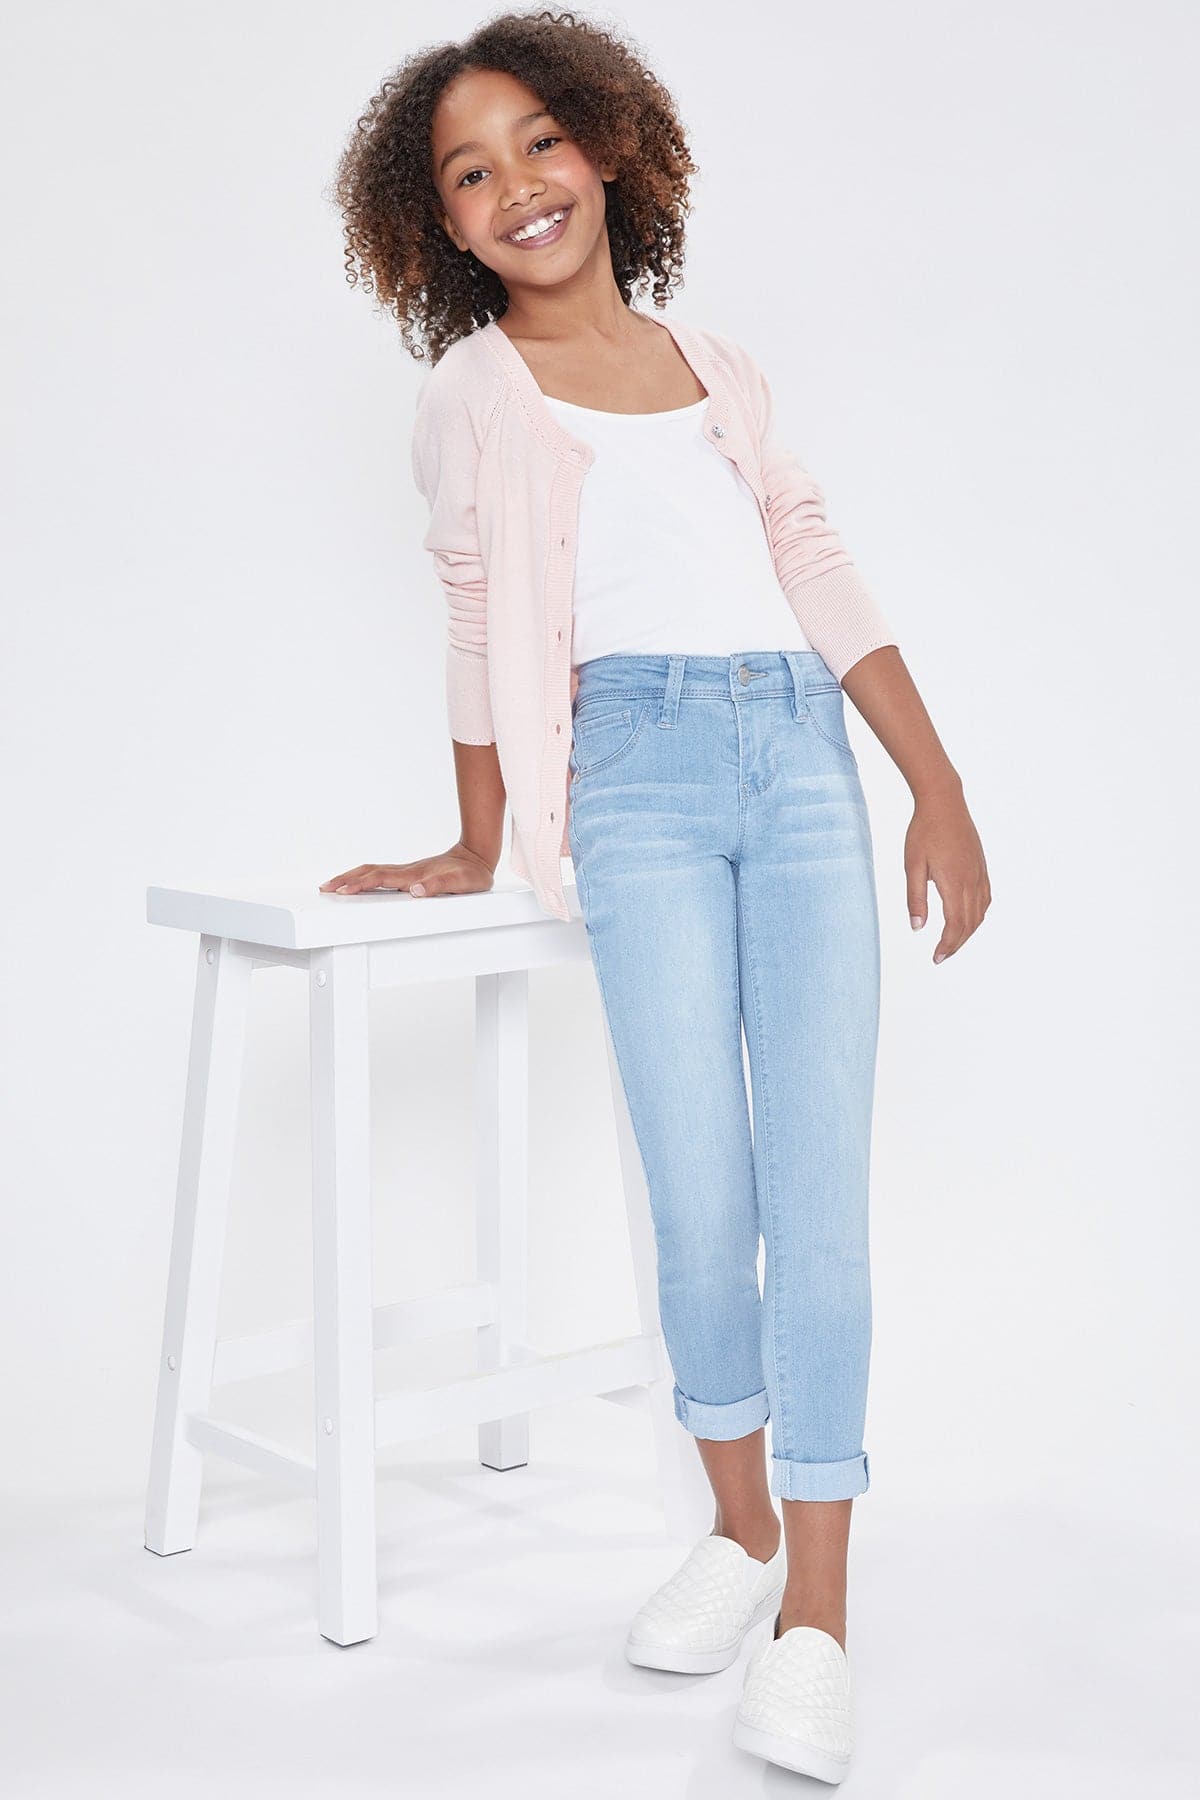 Girls Optional Cuff Denim Skinny Jeans from YMI – YMI JEANS